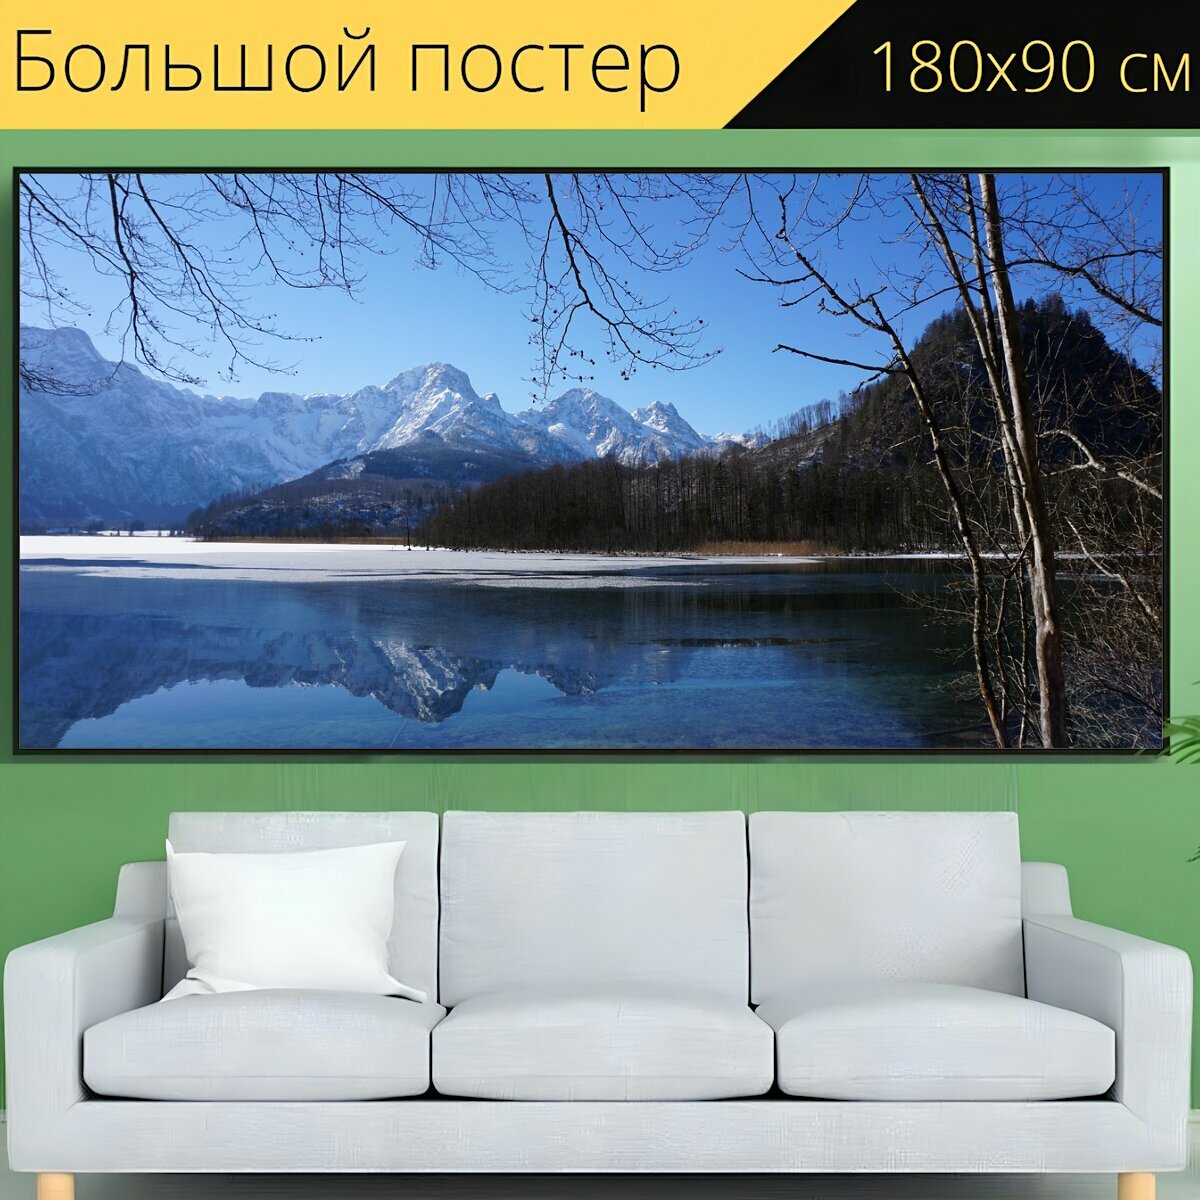 Большой постер "Горы, озеро, зеркальное отображение" 180 x 90 см. для интерьера